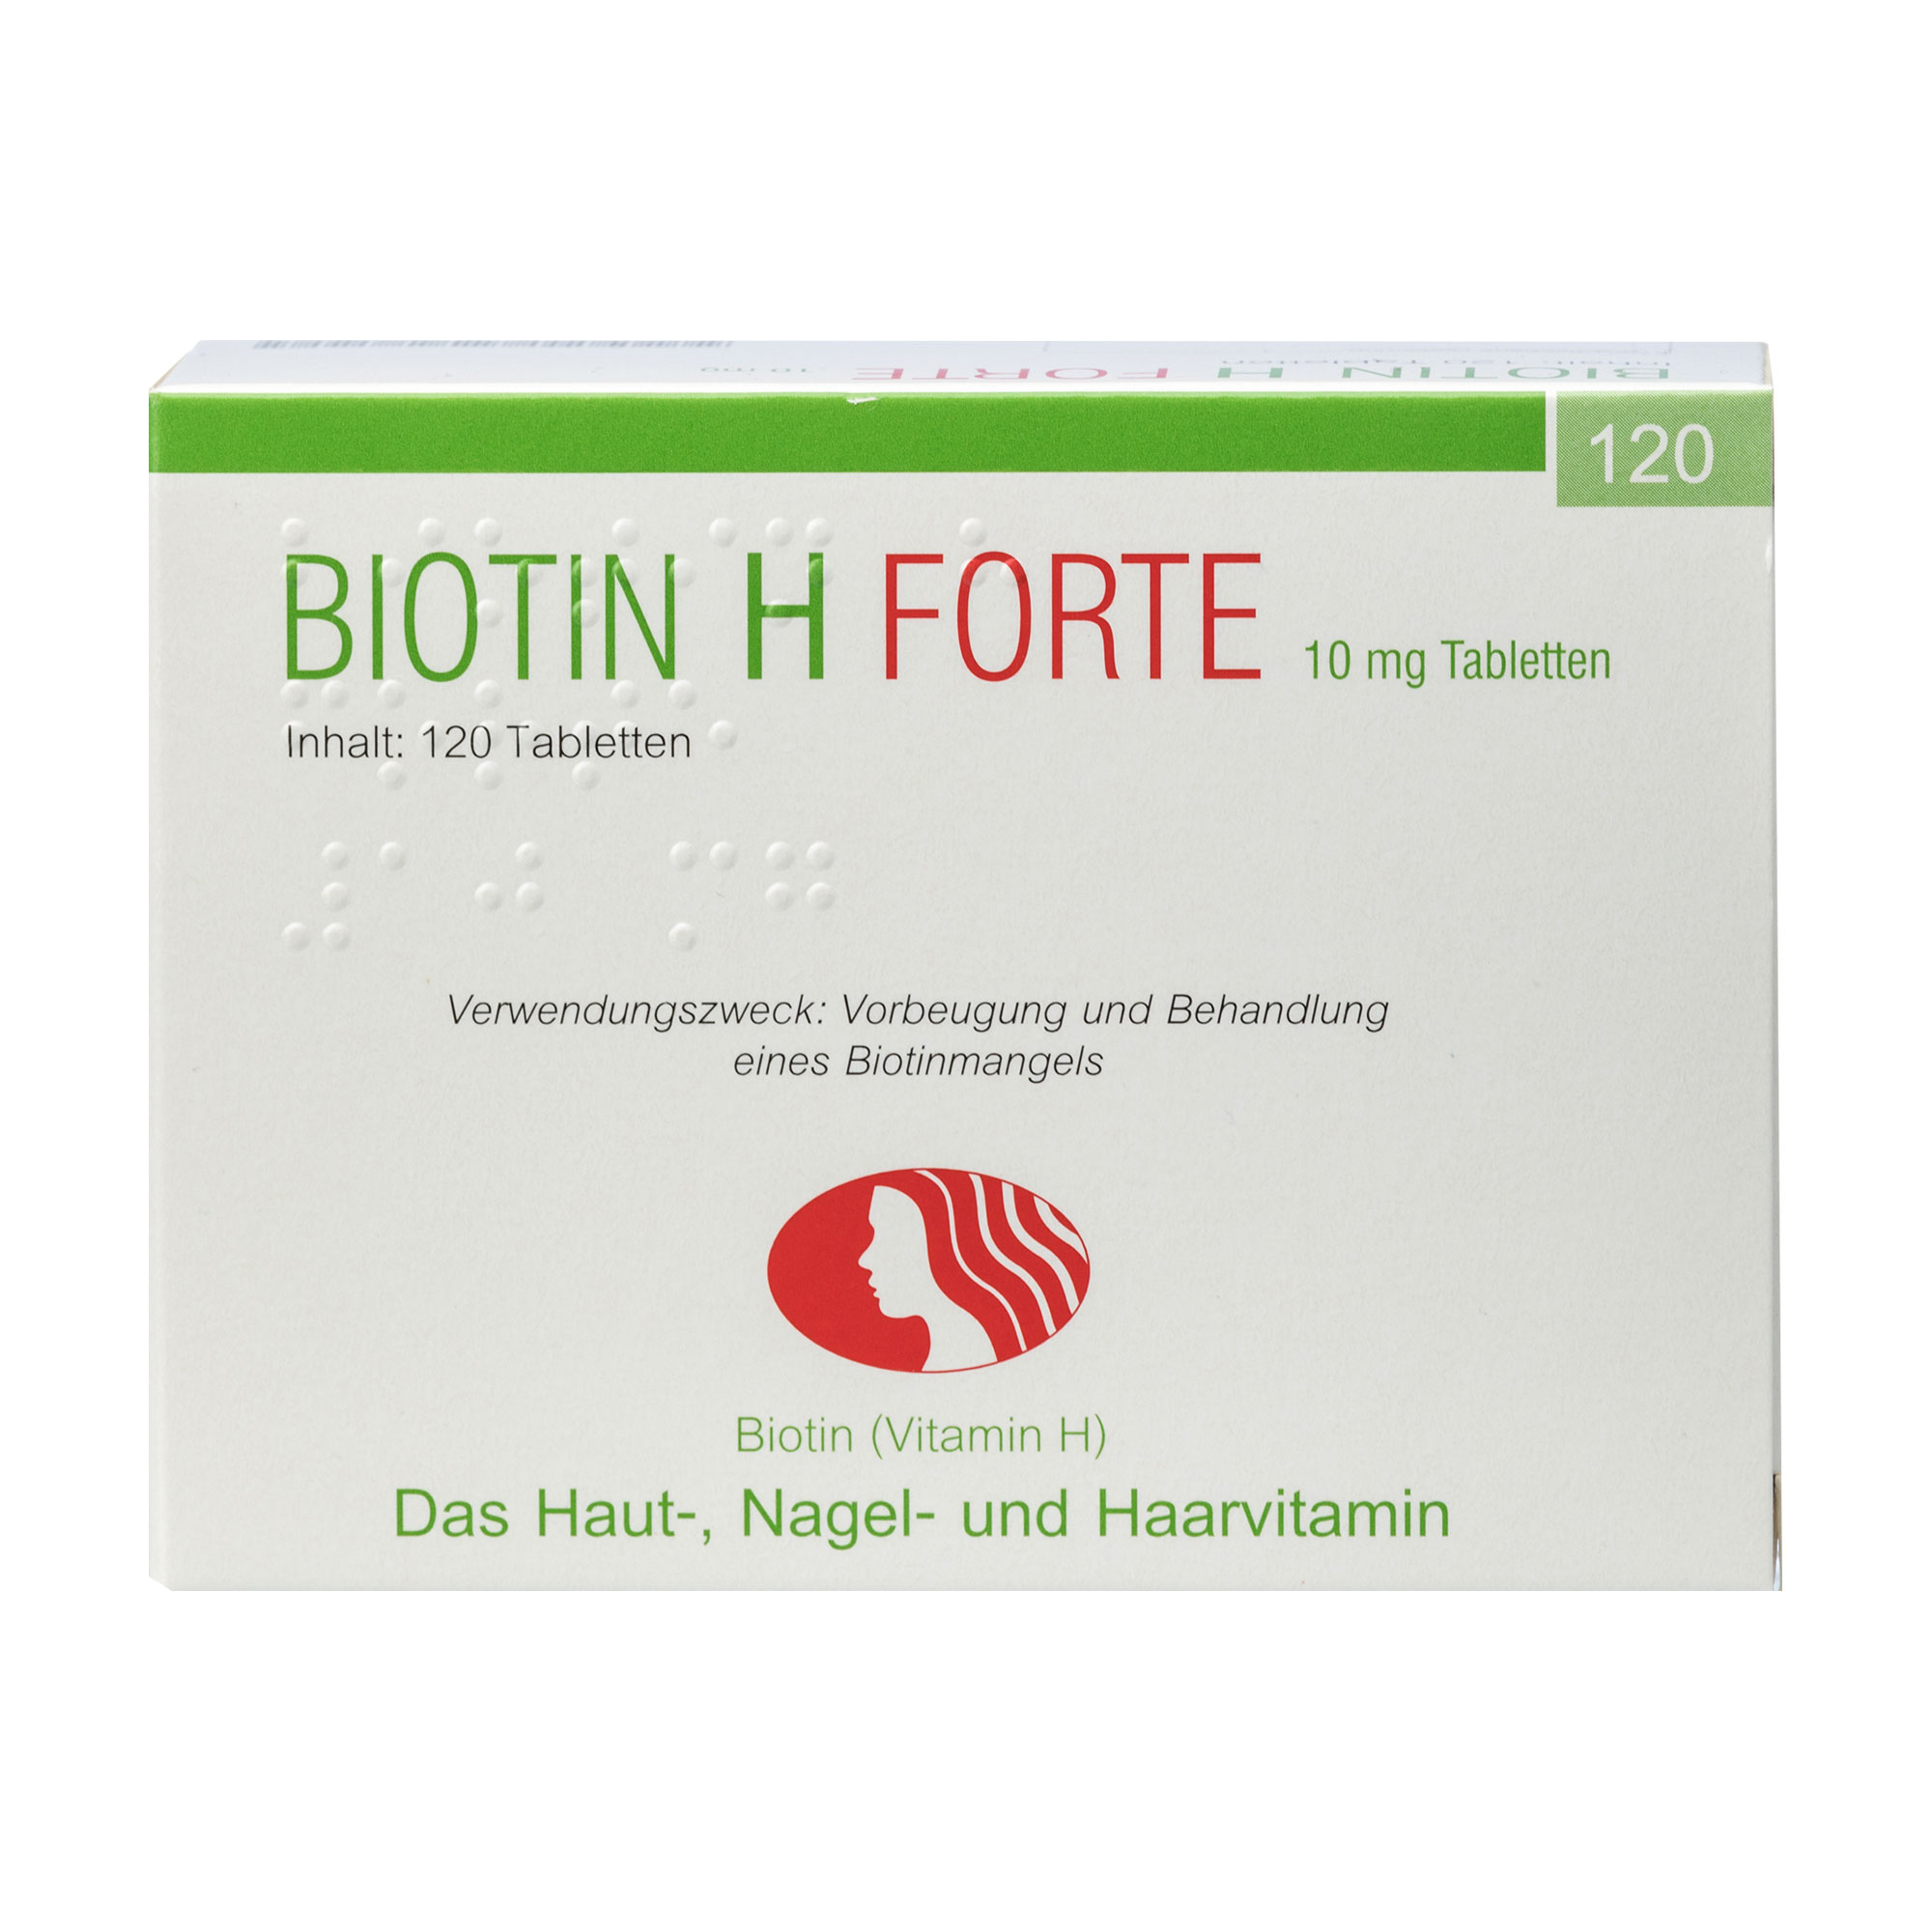 Vorbeugung und Behandlung von Biotin-Mangelzuständen, Behandlung von Biotin-Mangelzuständen beim sehr seltenen Biotin-abhängigen Carboxylasemangel